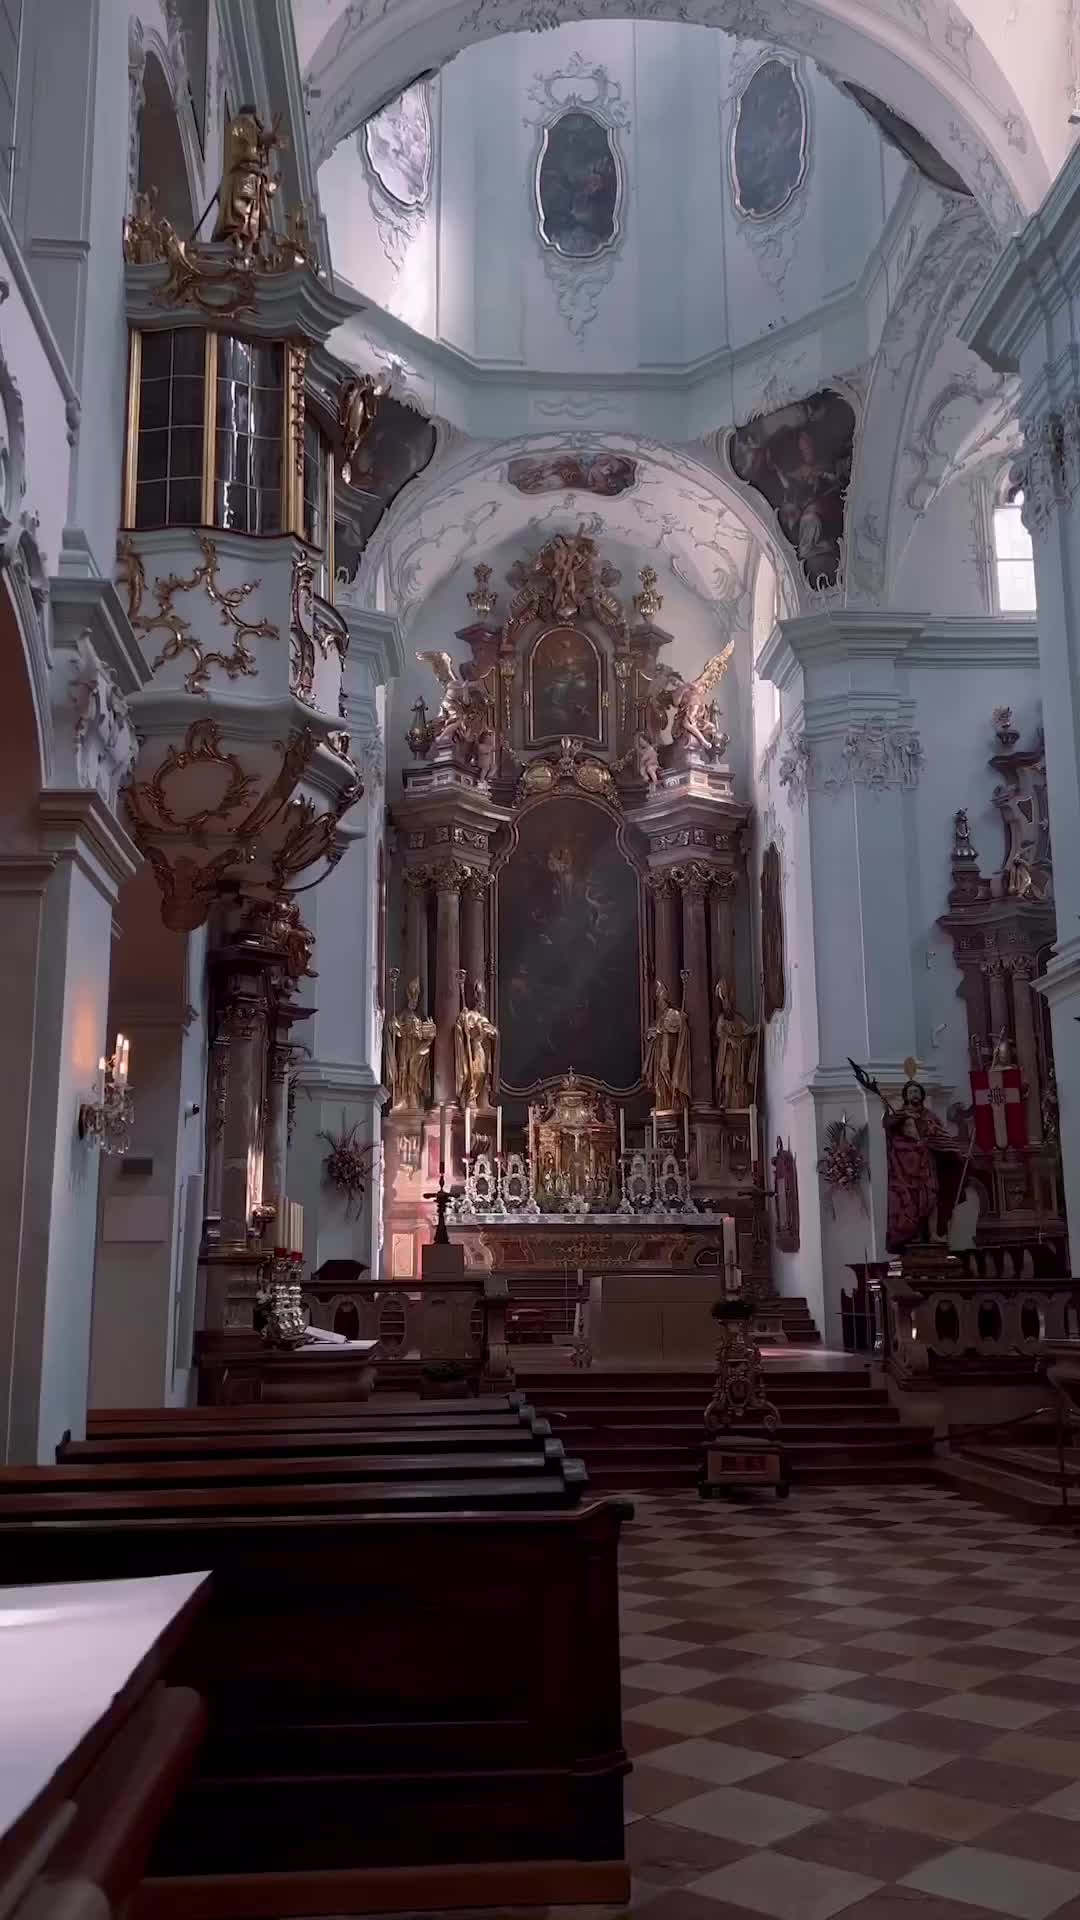 Stiftskirche St. Peter: Mozart, Haydn & Baroque Beauty